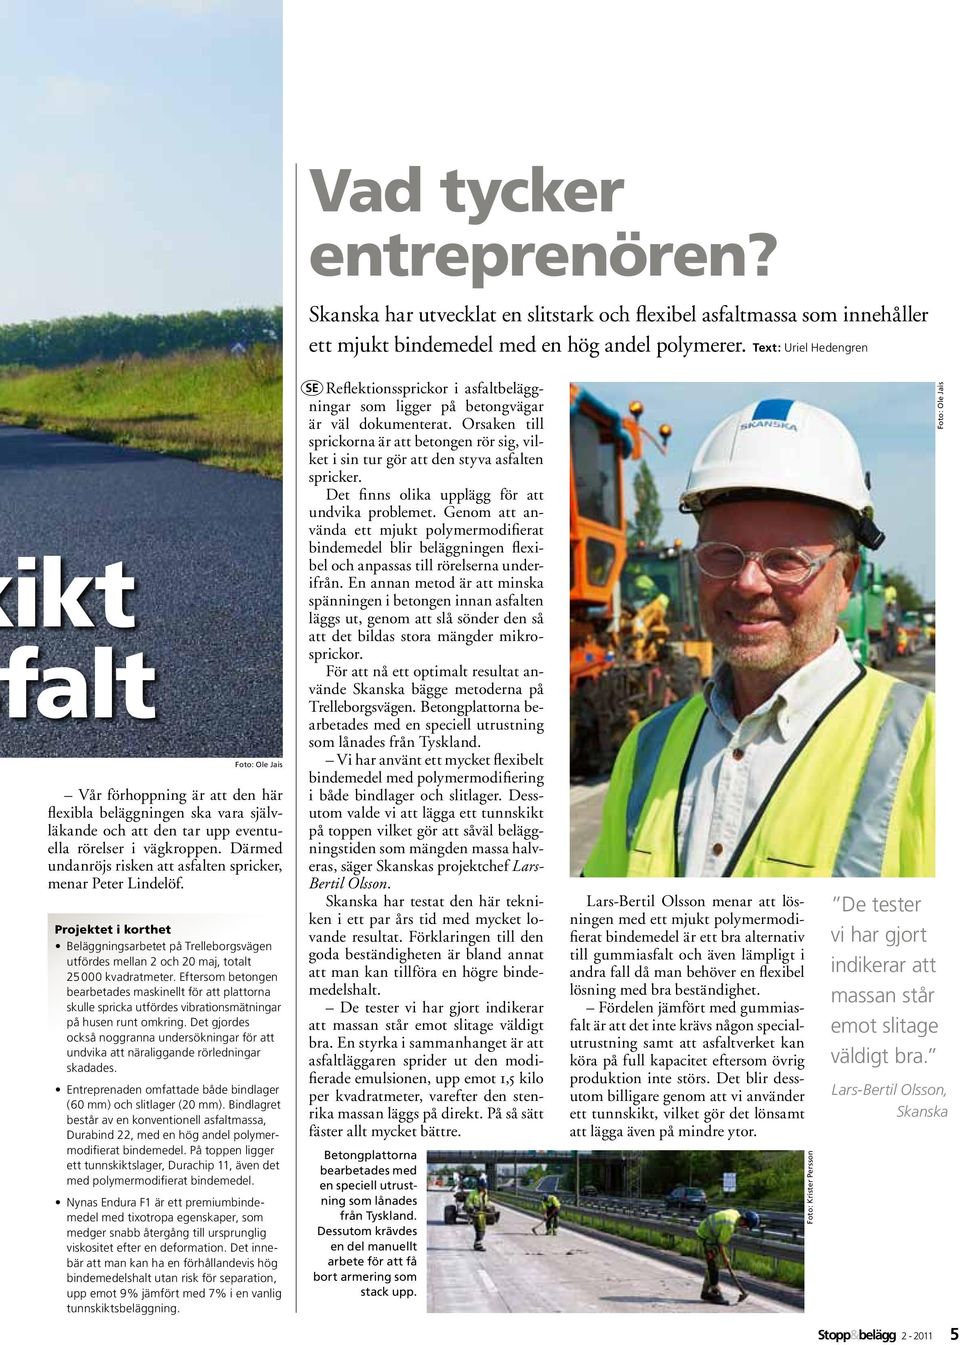 Därmed undanröjs risken att asfalten spricker, menar Peter Lindelöf. Projektet i korthet Beläggningsarbetet på Trelleborgsvägen utfördes mellan 2 och 20 maj, totalt 25 000 kvadratmeter.